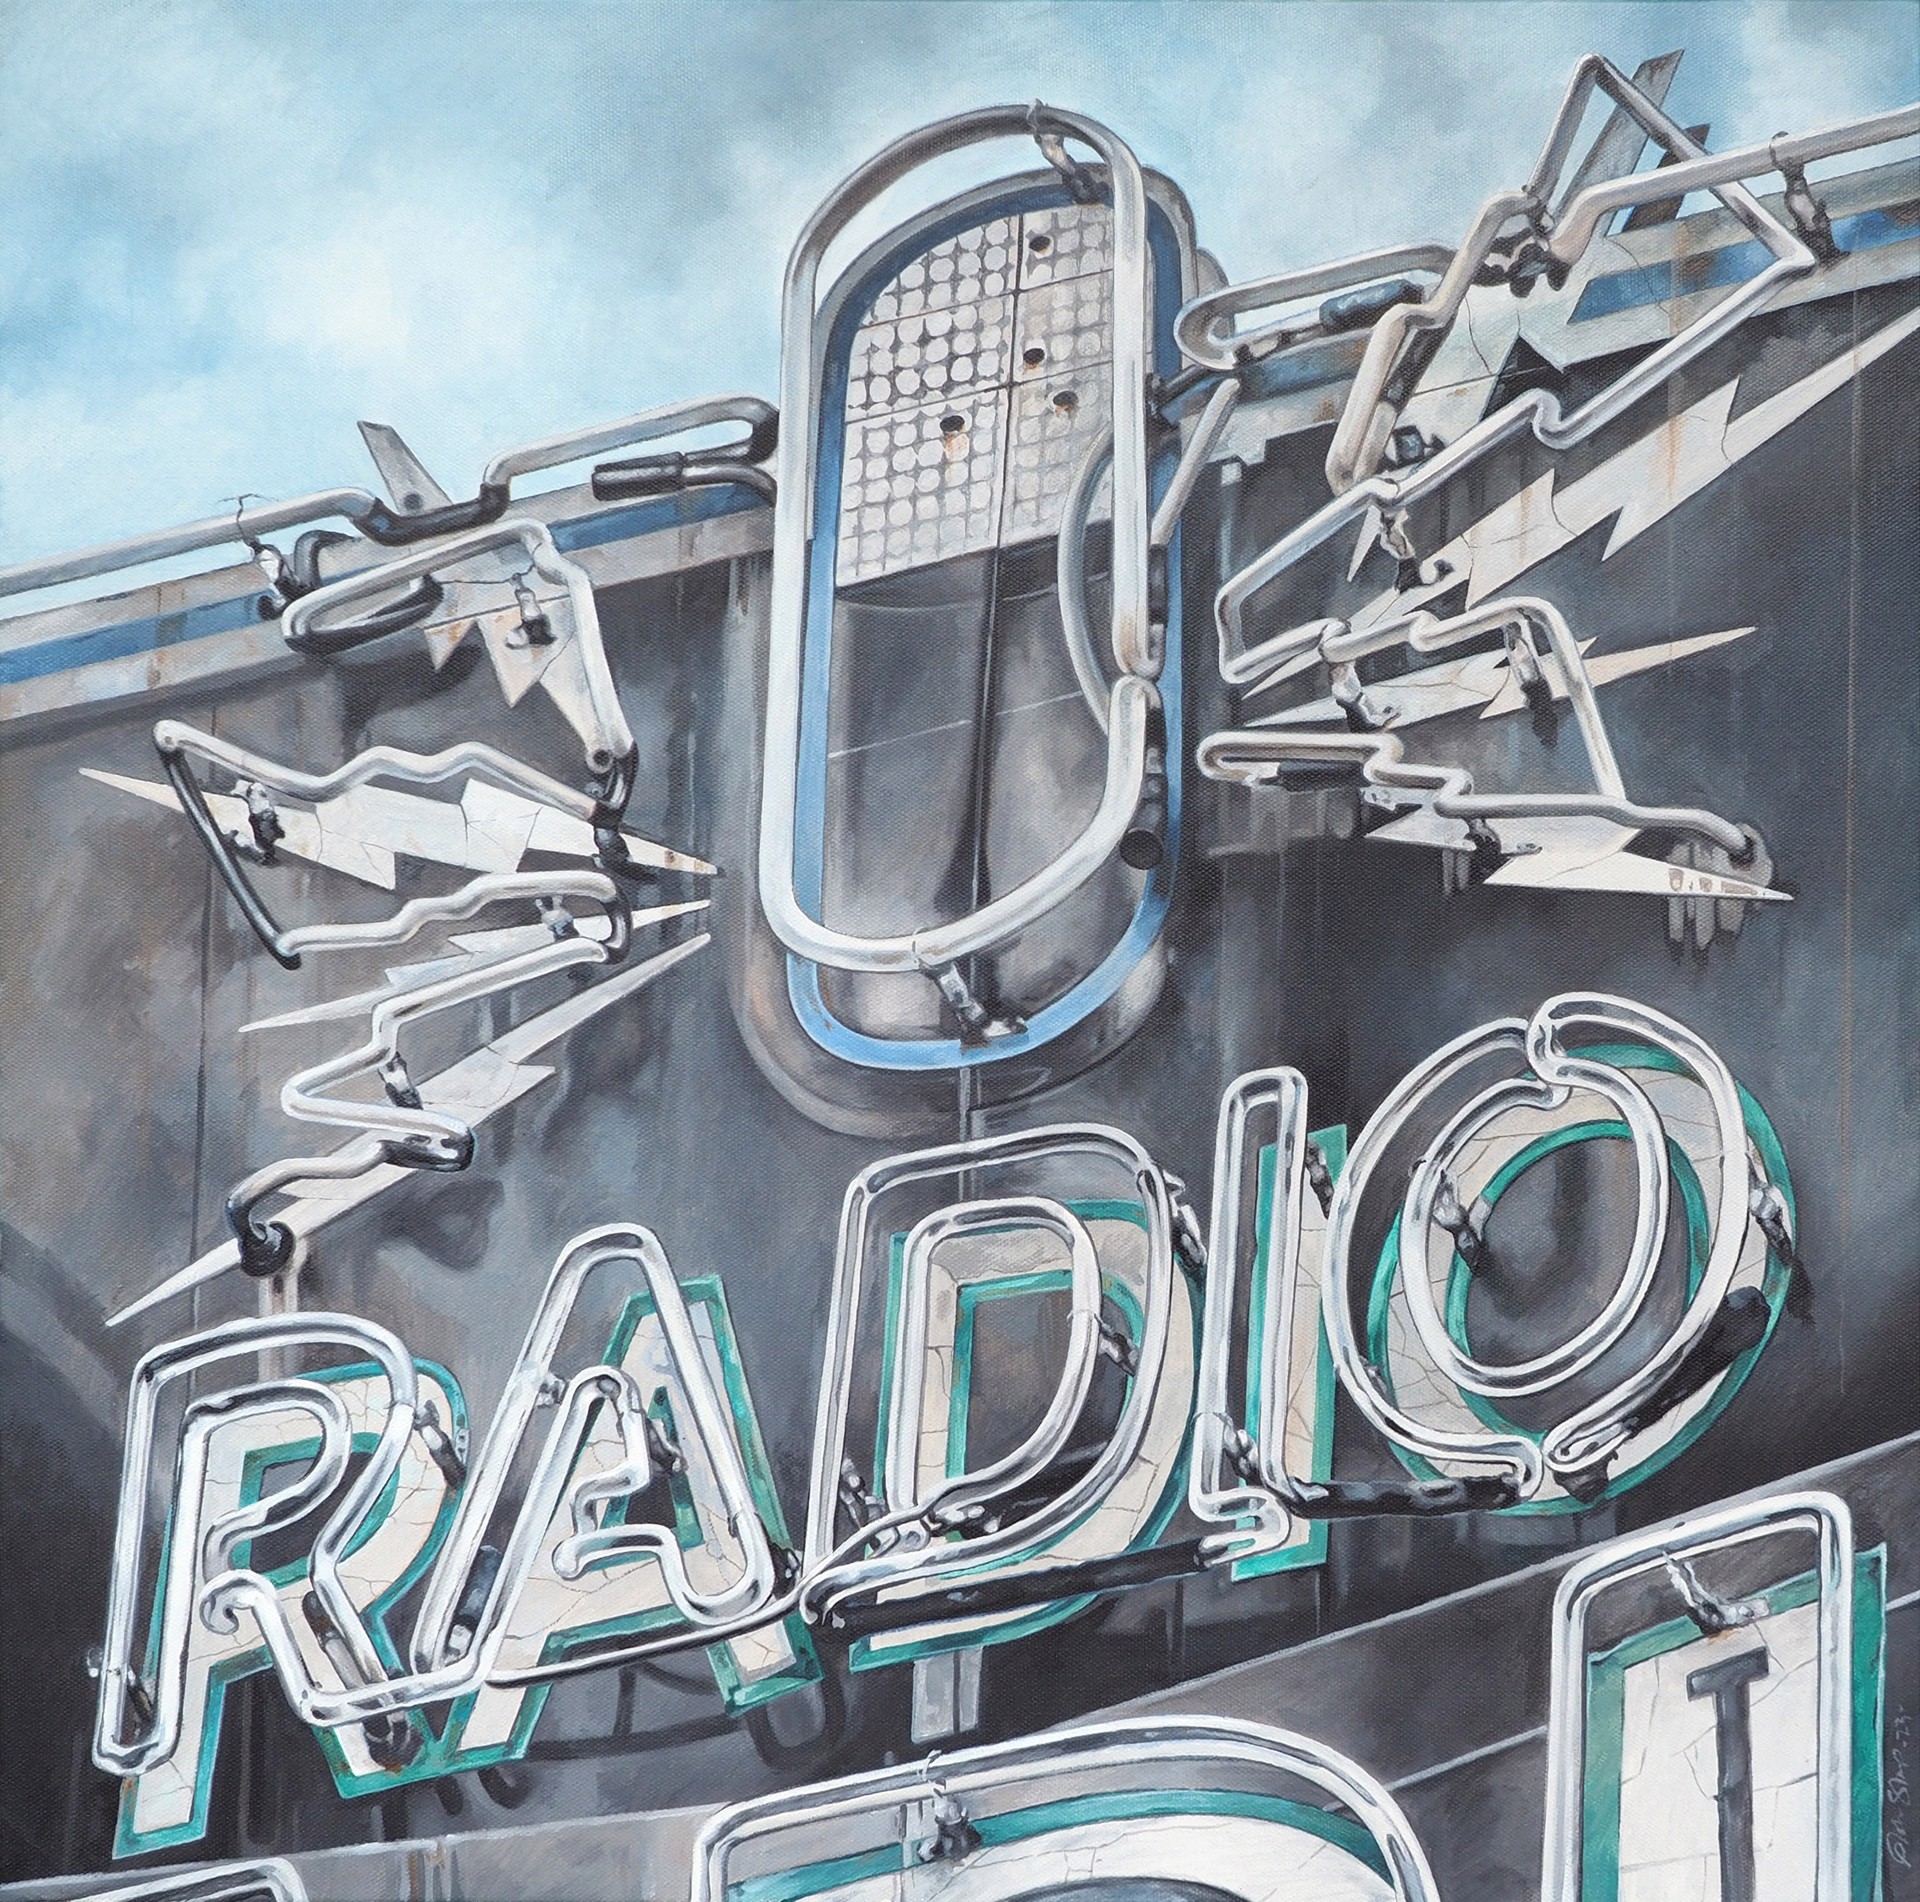 Radio Radio by John Sharp